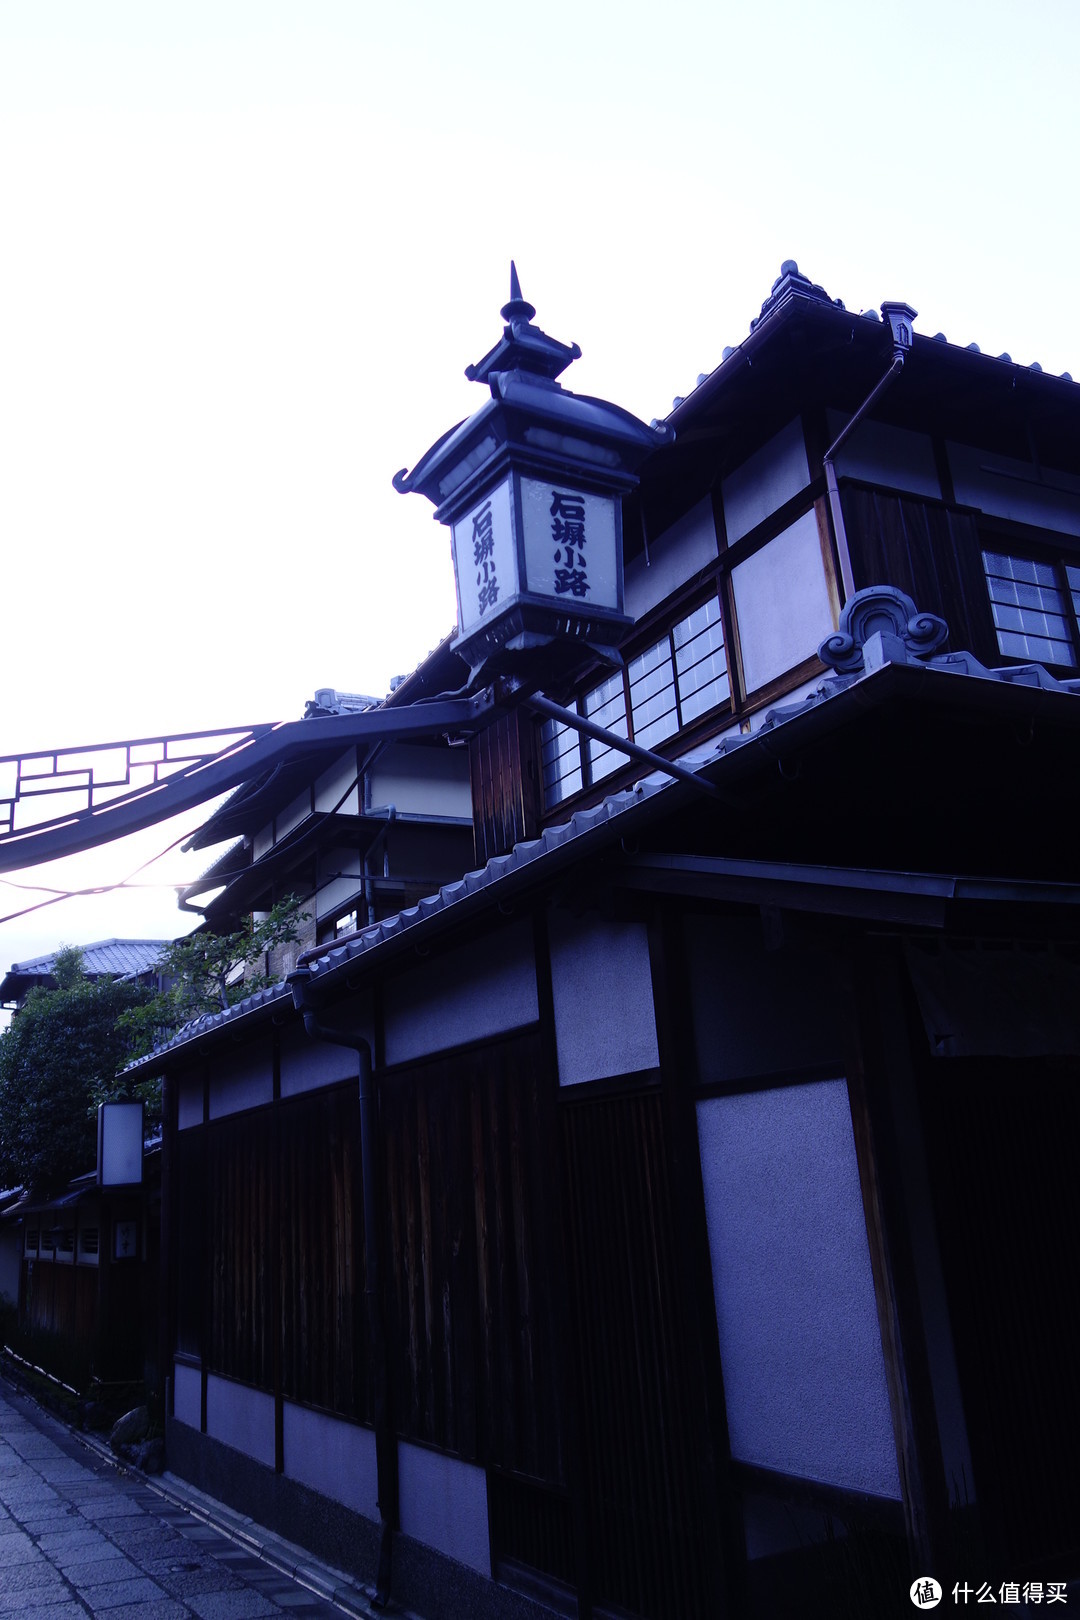 京都逛吃之旅，金阁寺、龙安寺、清水寺、平安神宫、二条城……经典景点进来看